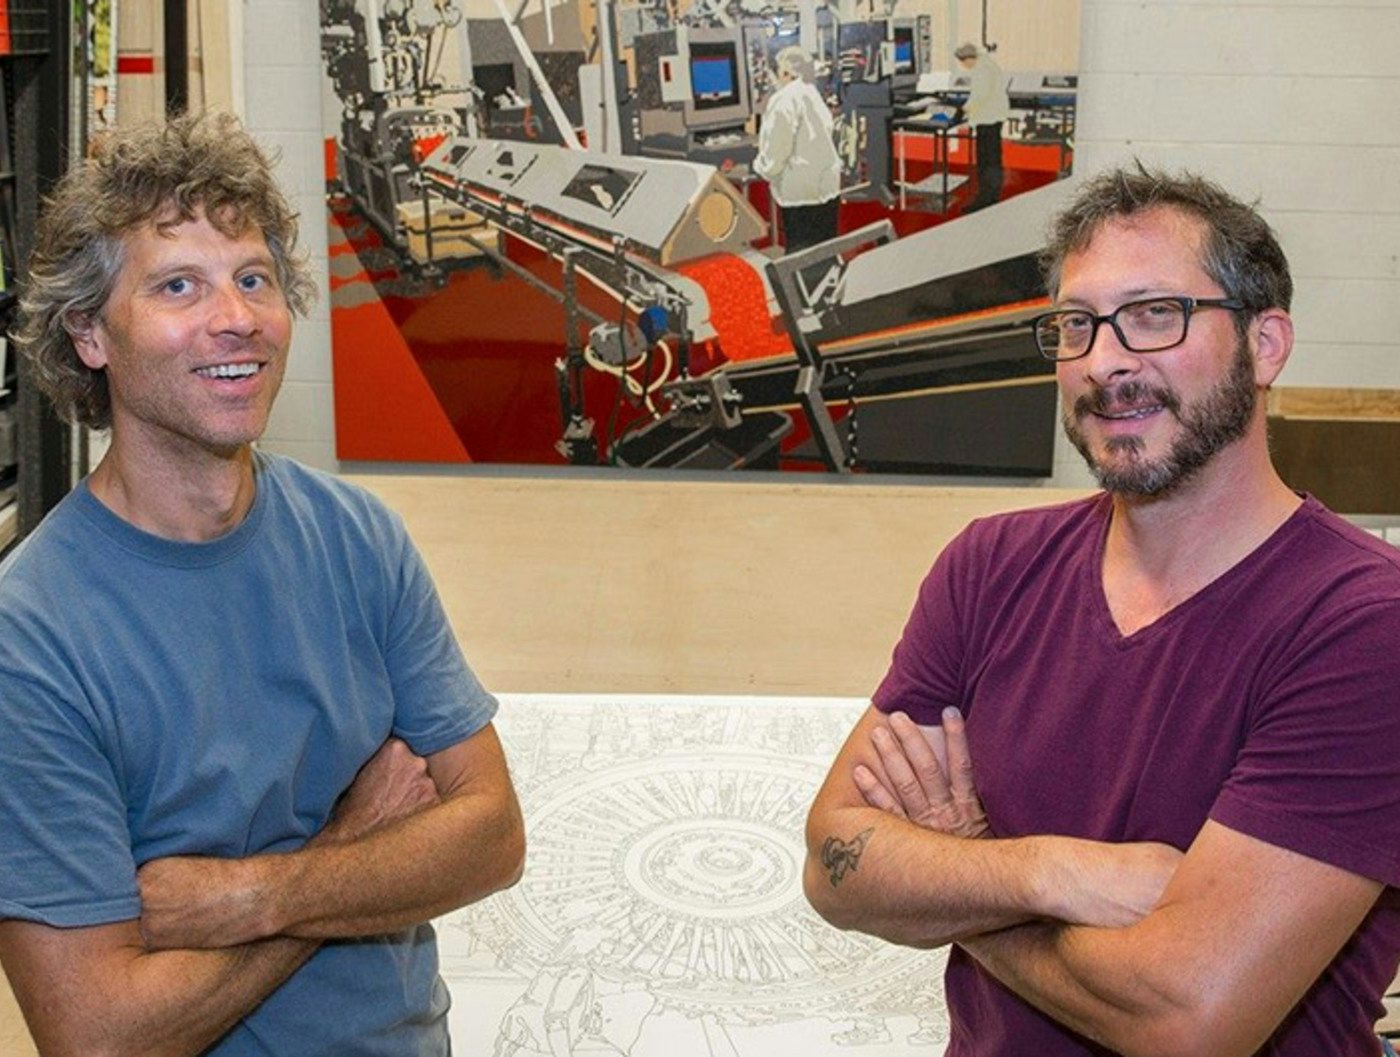 UnMuseum Opening of Working Surface: Curtis Goldstein + Matt Lynch